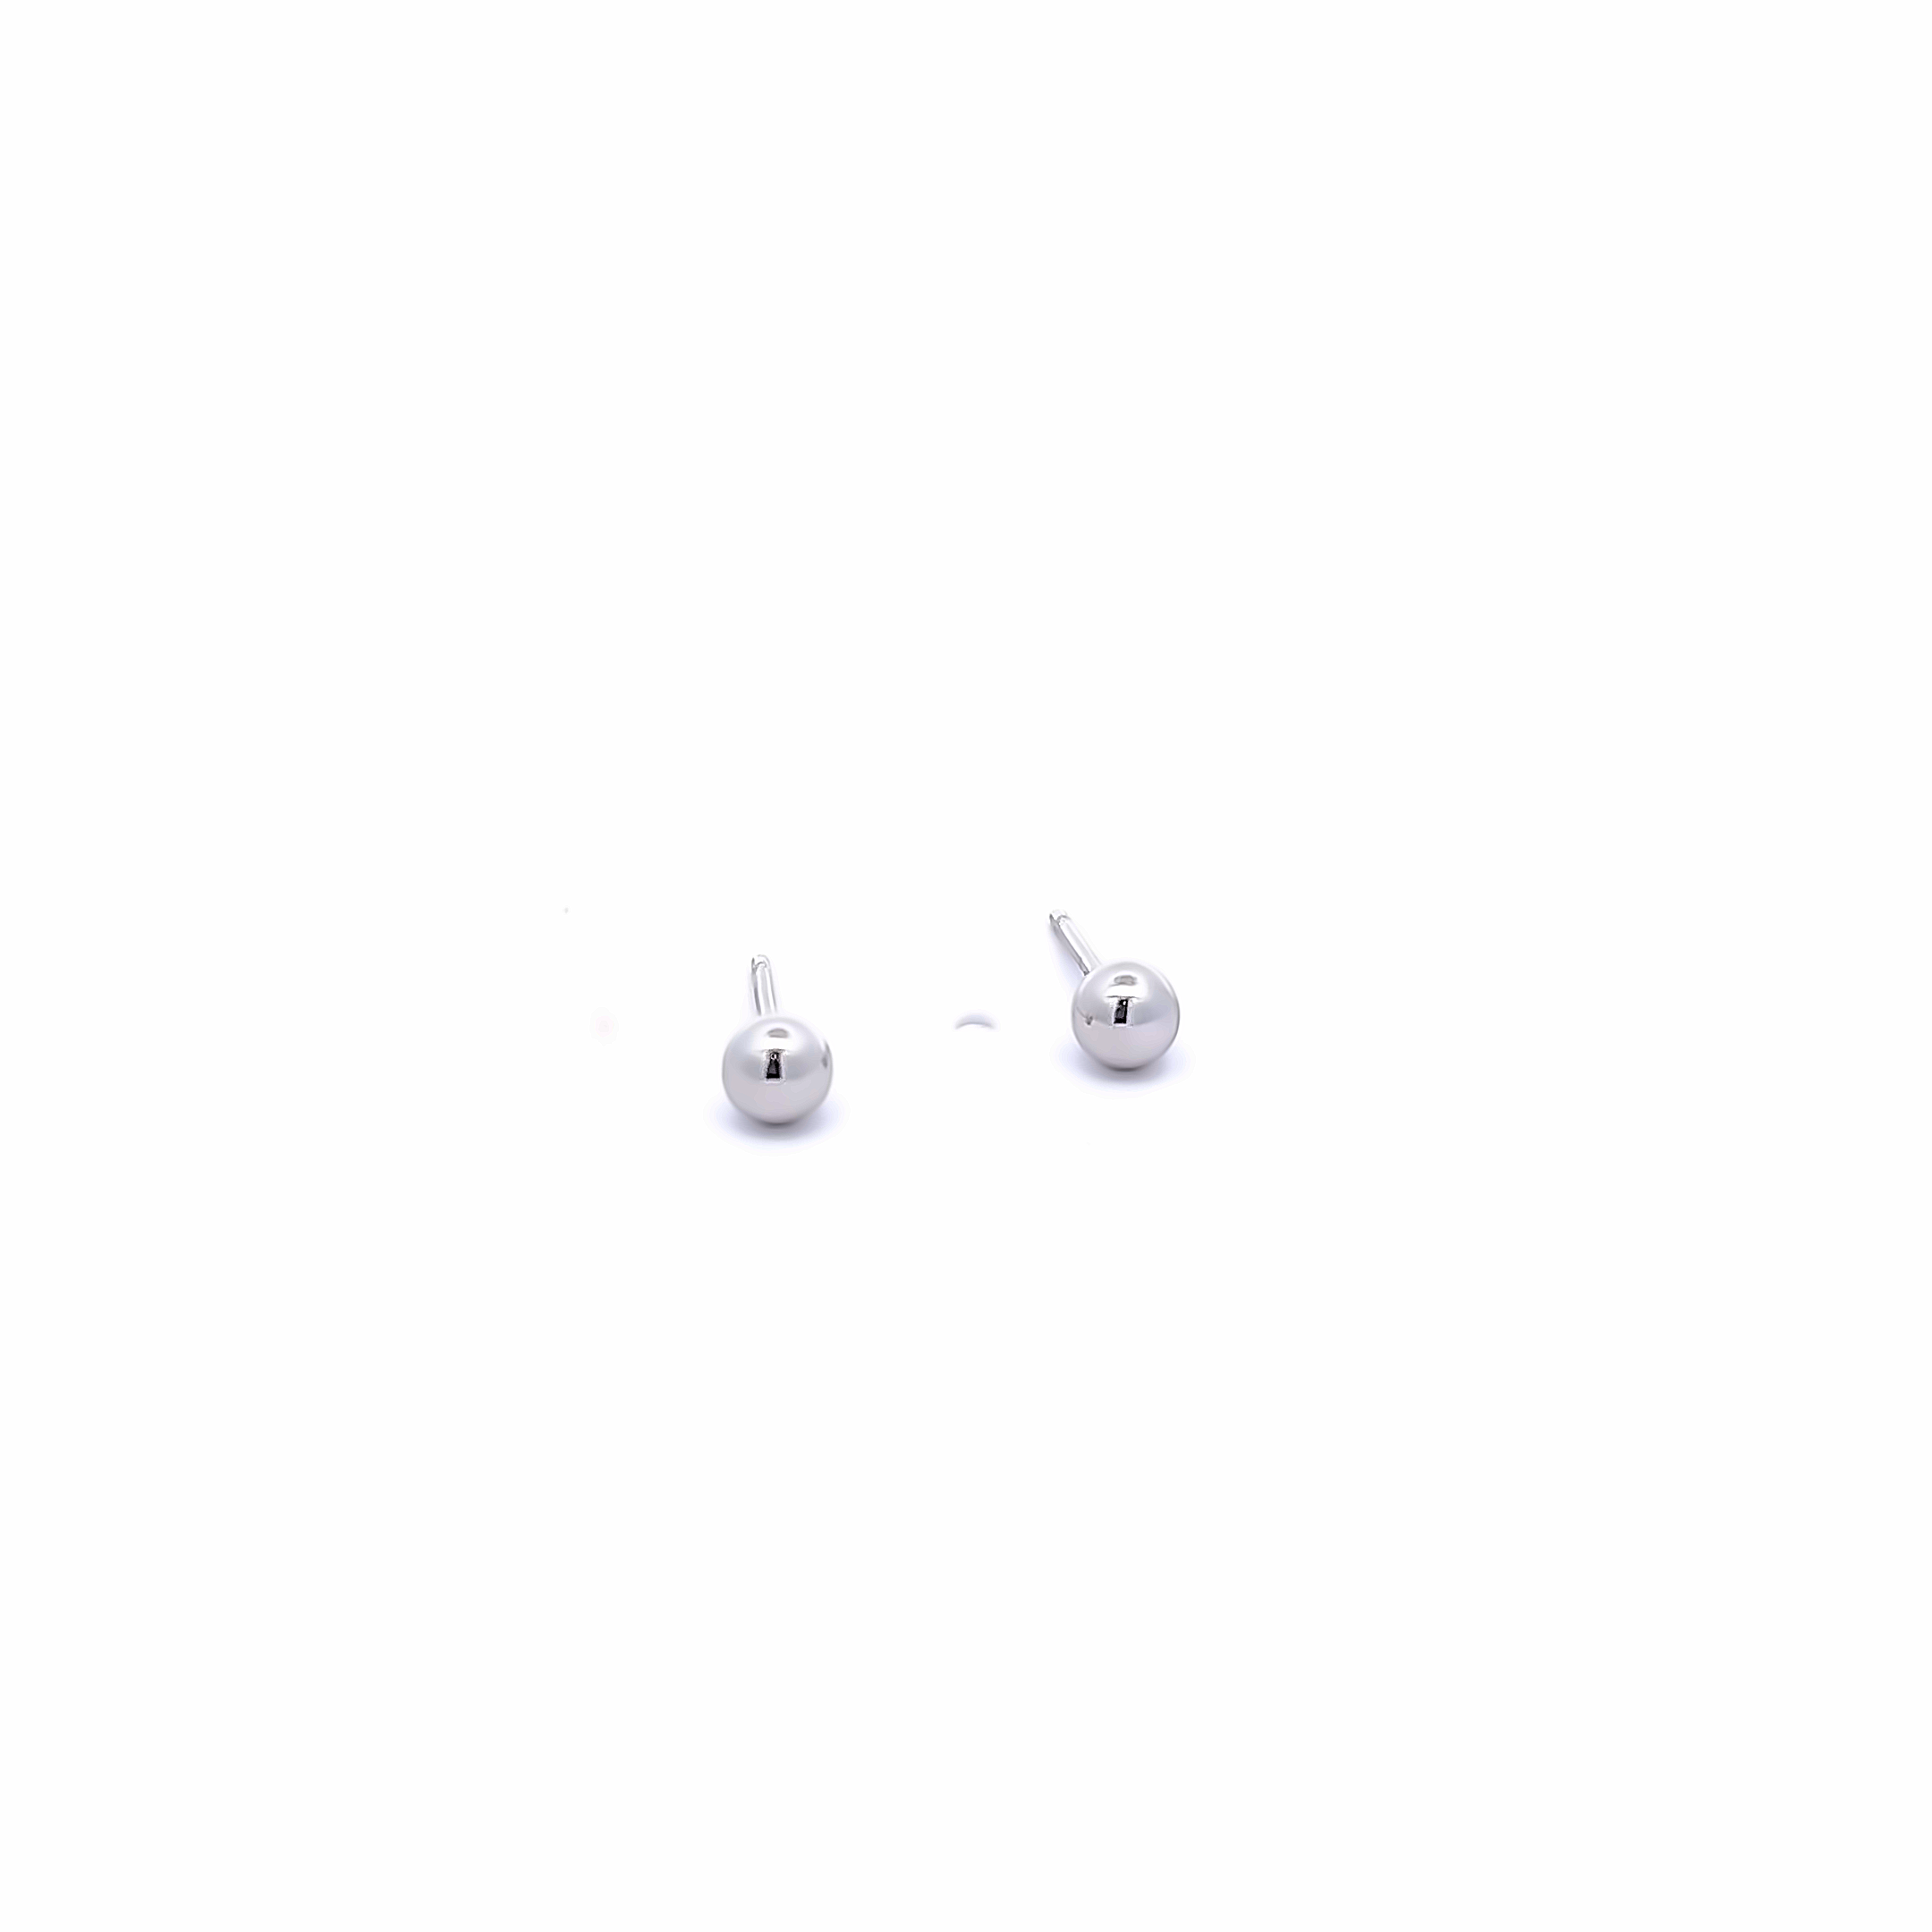 4mm 14k White Gold Ball Stud Earrings